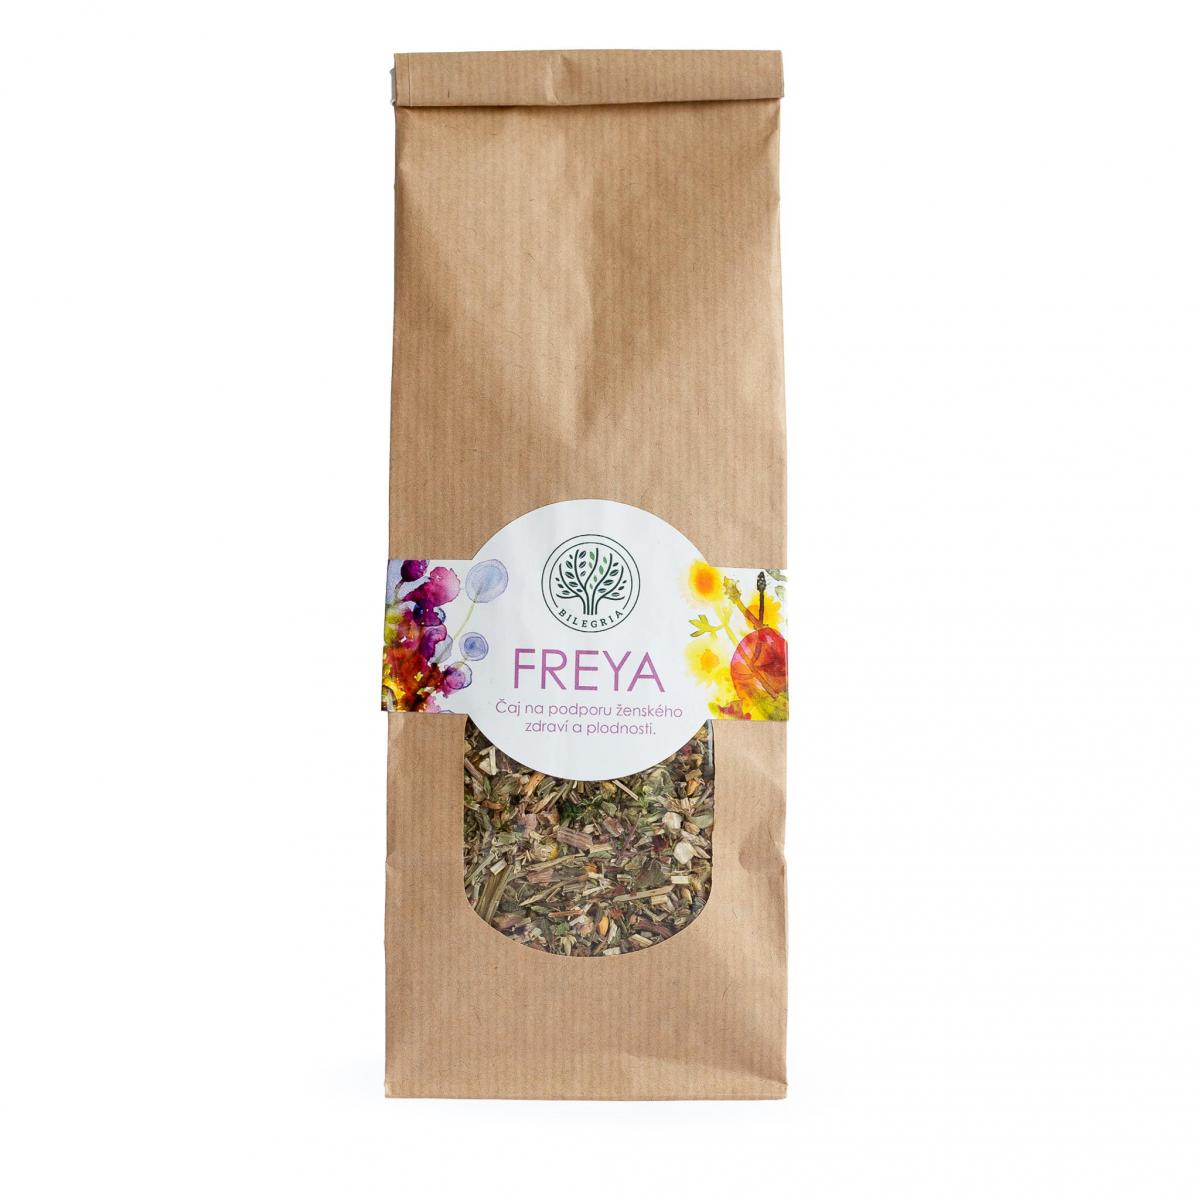 FREYA - bylinná čajová směs na podporu ženského zdraví a plodnosti, 100 g